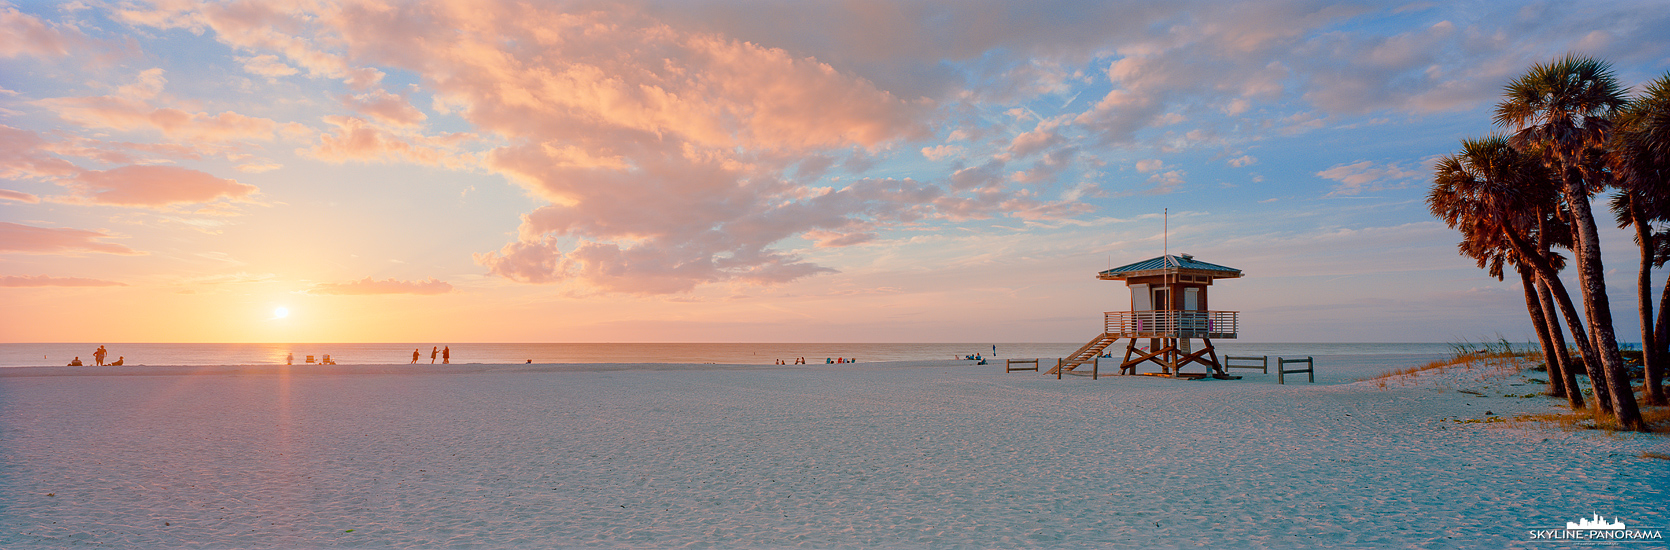 Panorama Florida - Sunset in Bradenton Beach (p_01234)